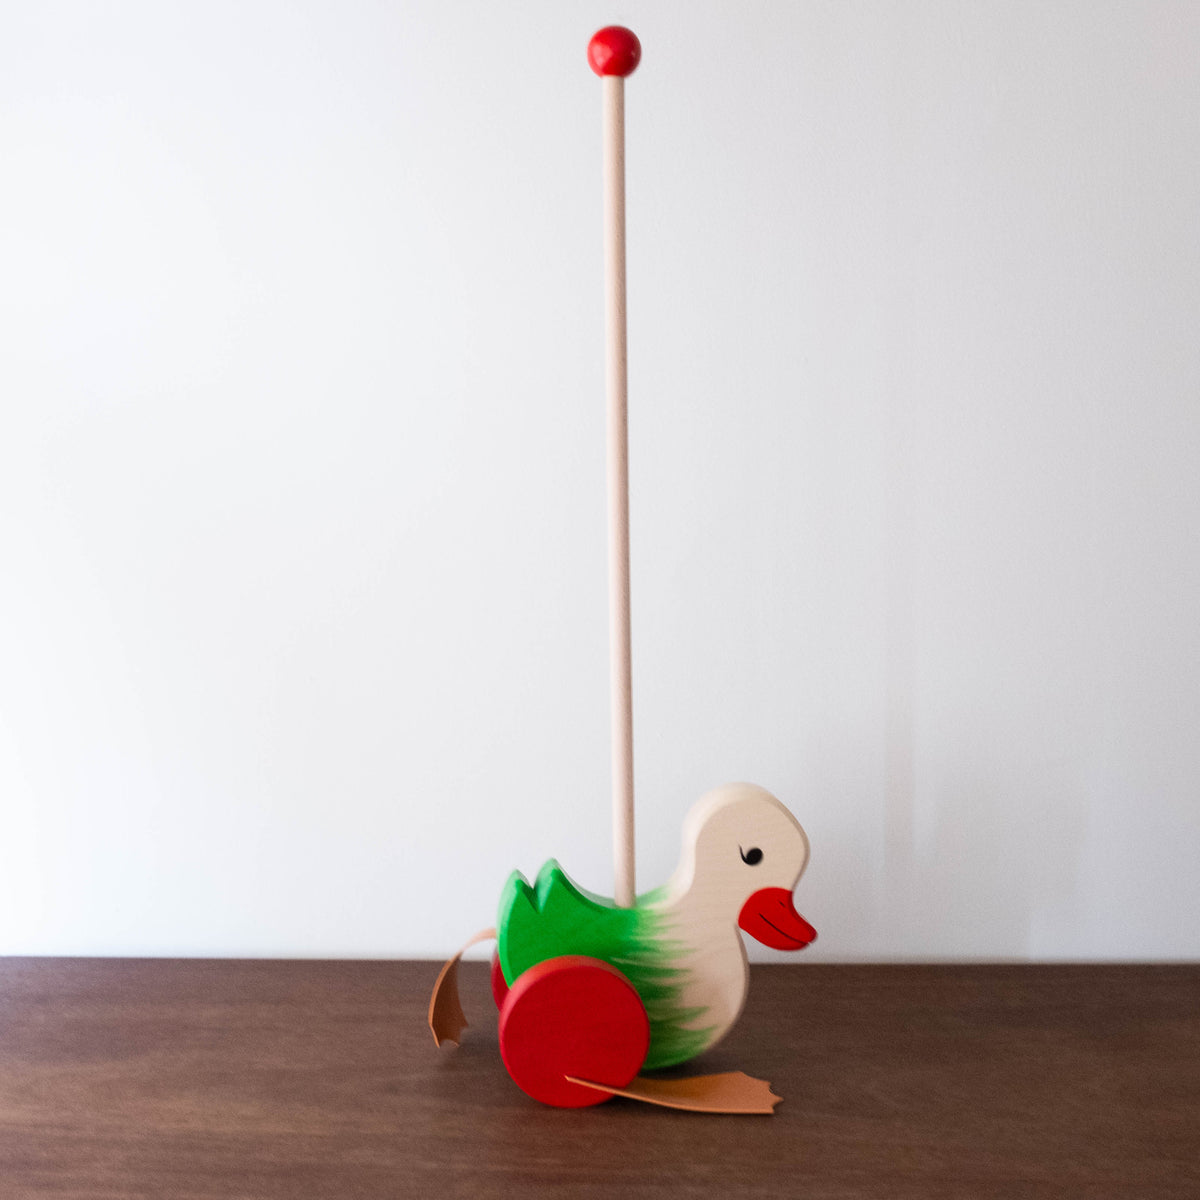 Interpunctie heel fijn Gietvorm Handmade Wooden Push Duck Toy- Green | Shop Merci Milo